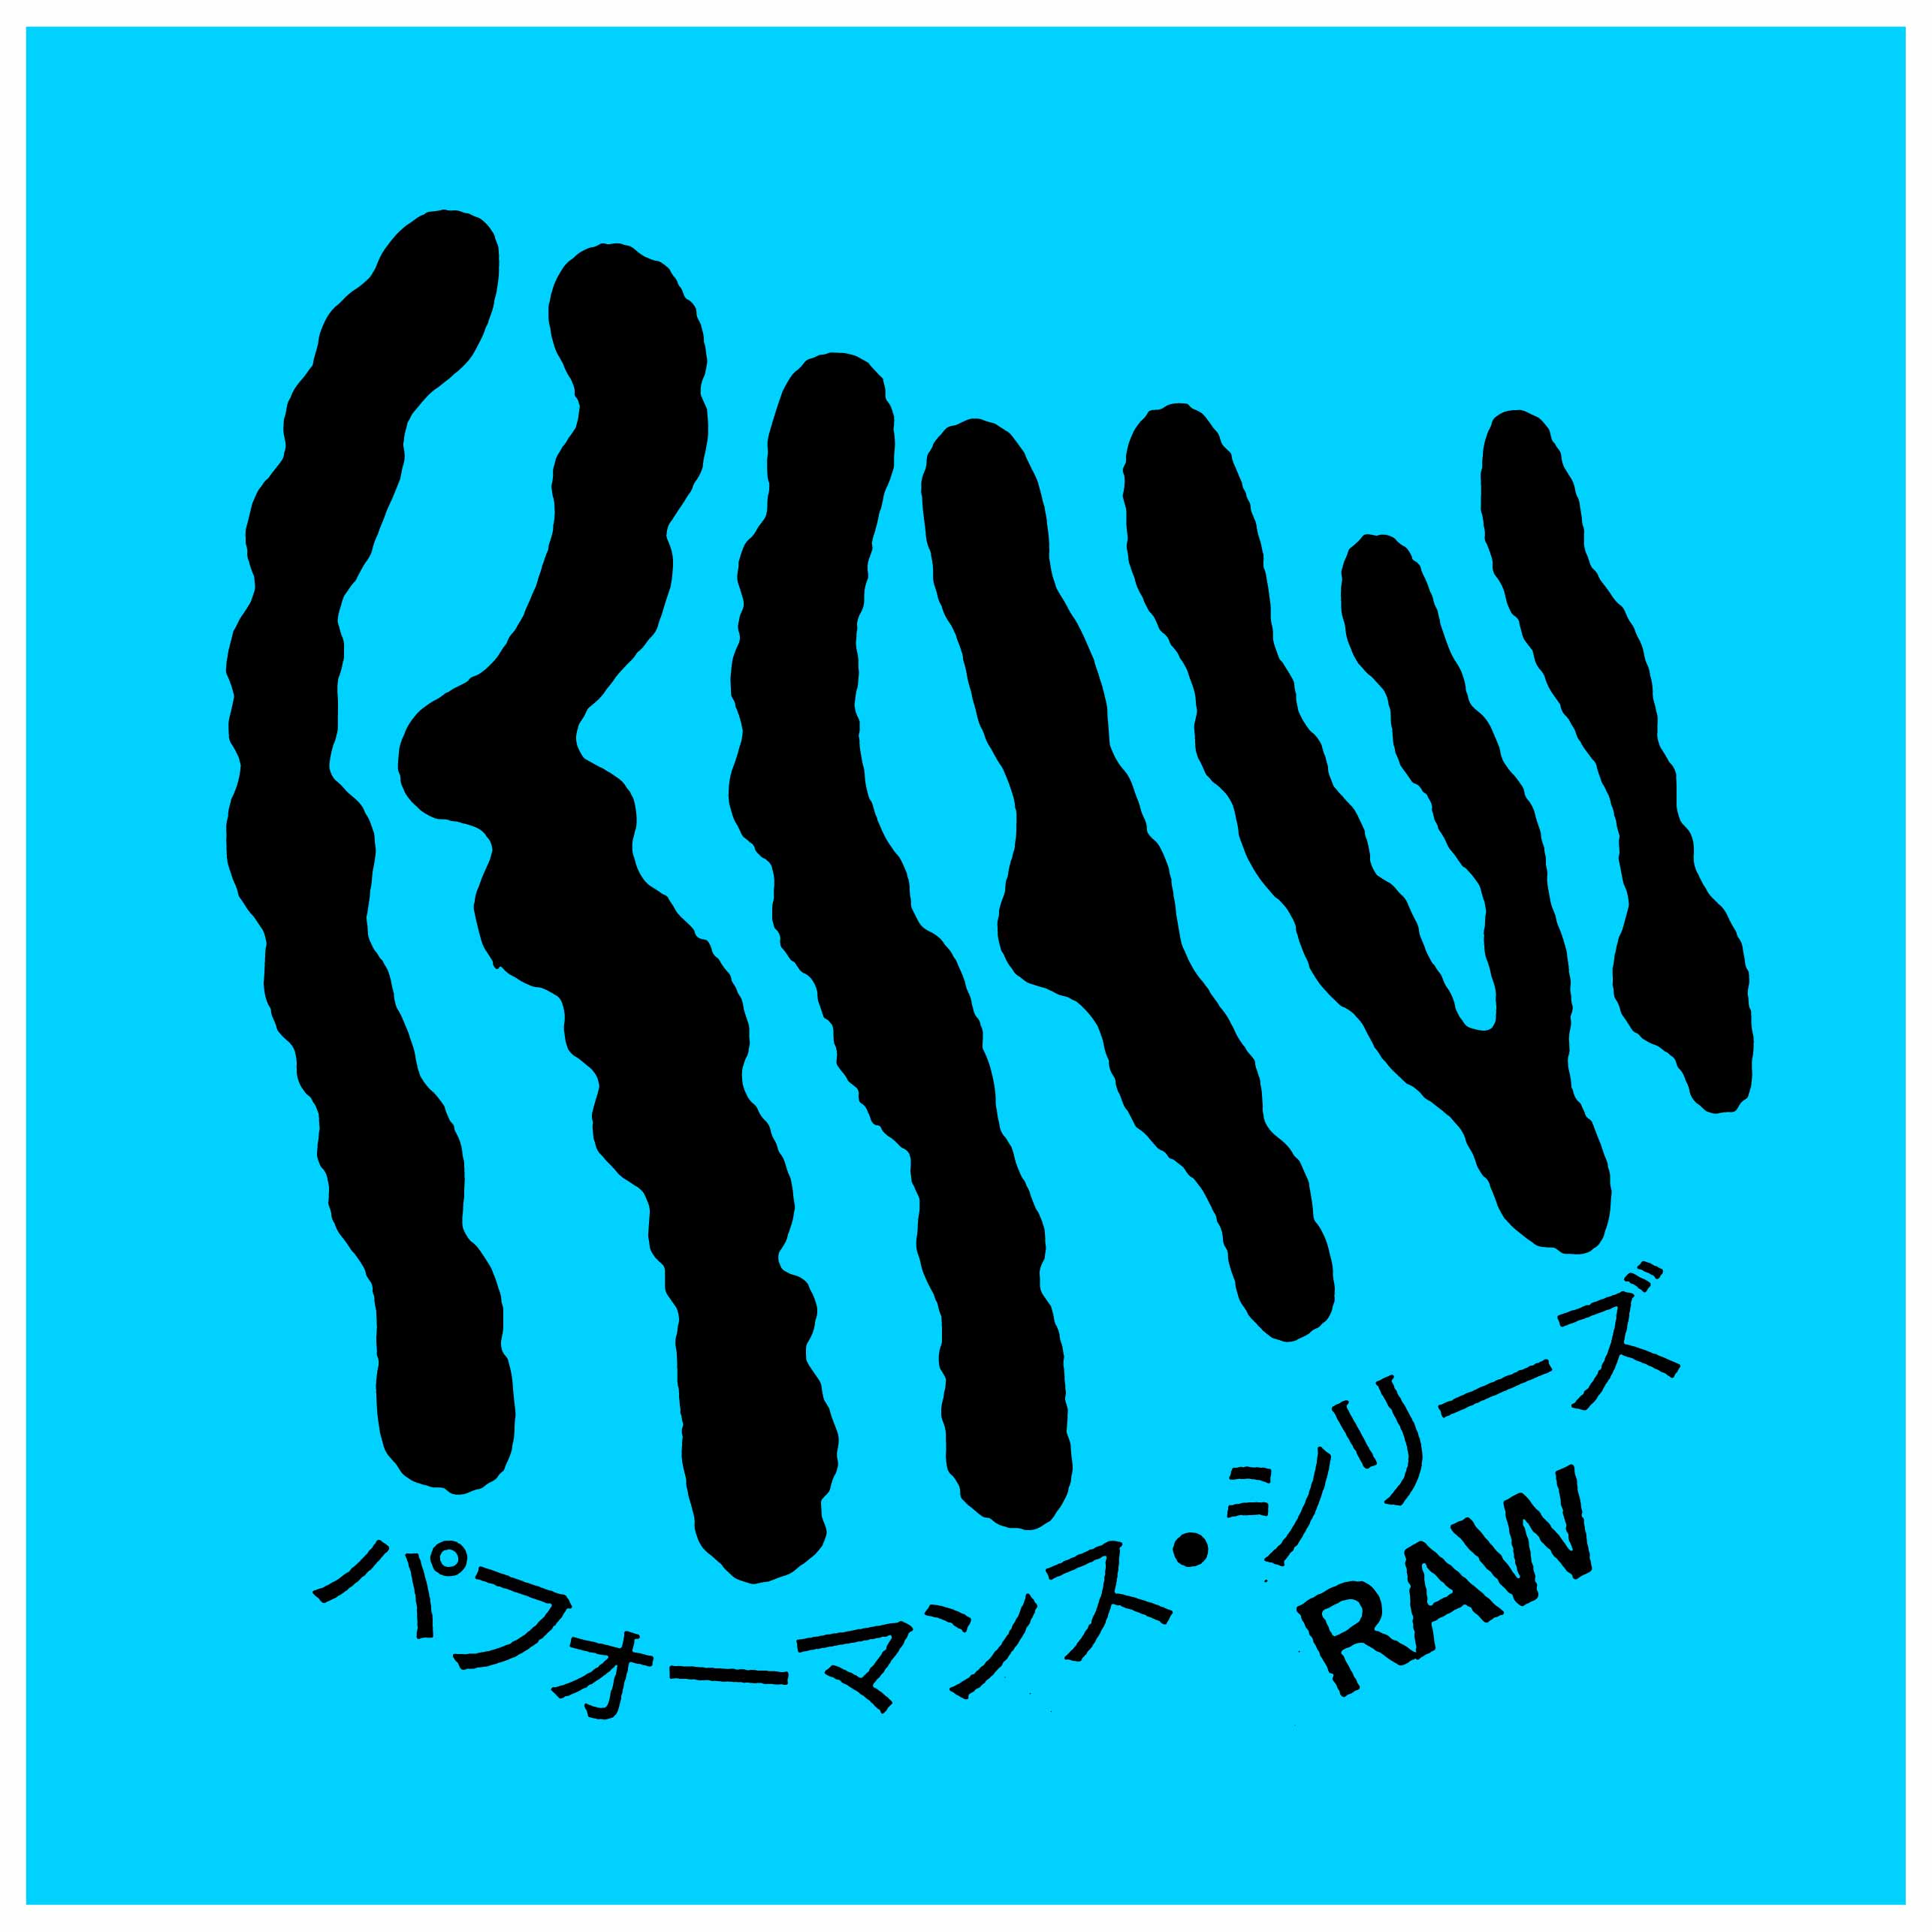 Performance series "RAW" 02 <br>the Otoasobi Project × YAMASHITA Zan